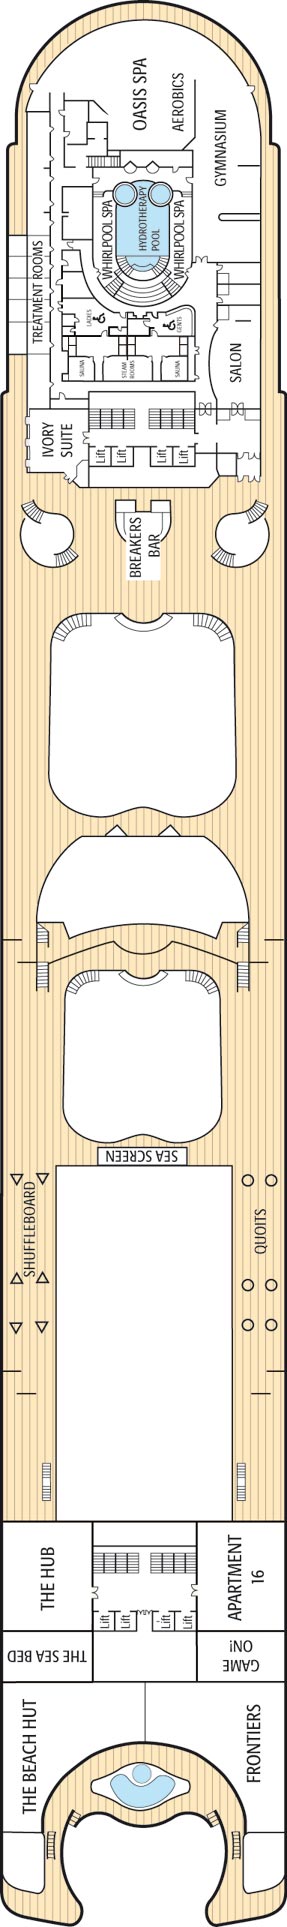 Aqua Deck Deck Plan